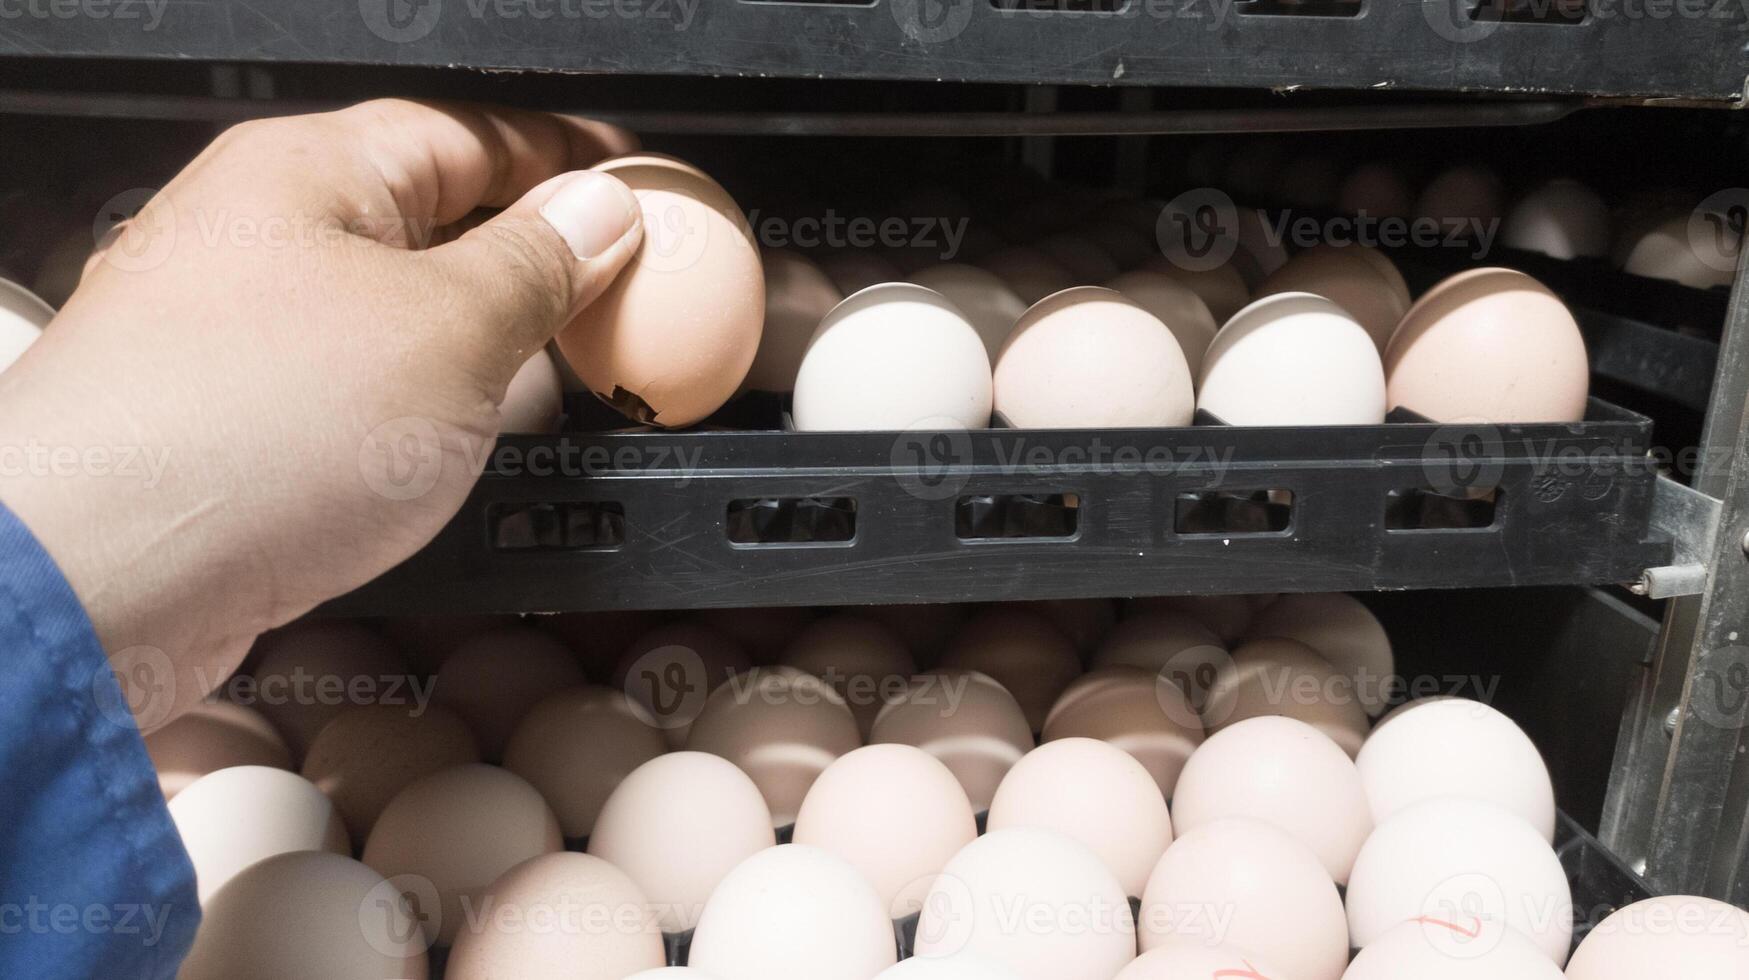 il qualità controllo fare qualità dai un'occhiata per tratteggio uova su il incubazione macchina camera. foto